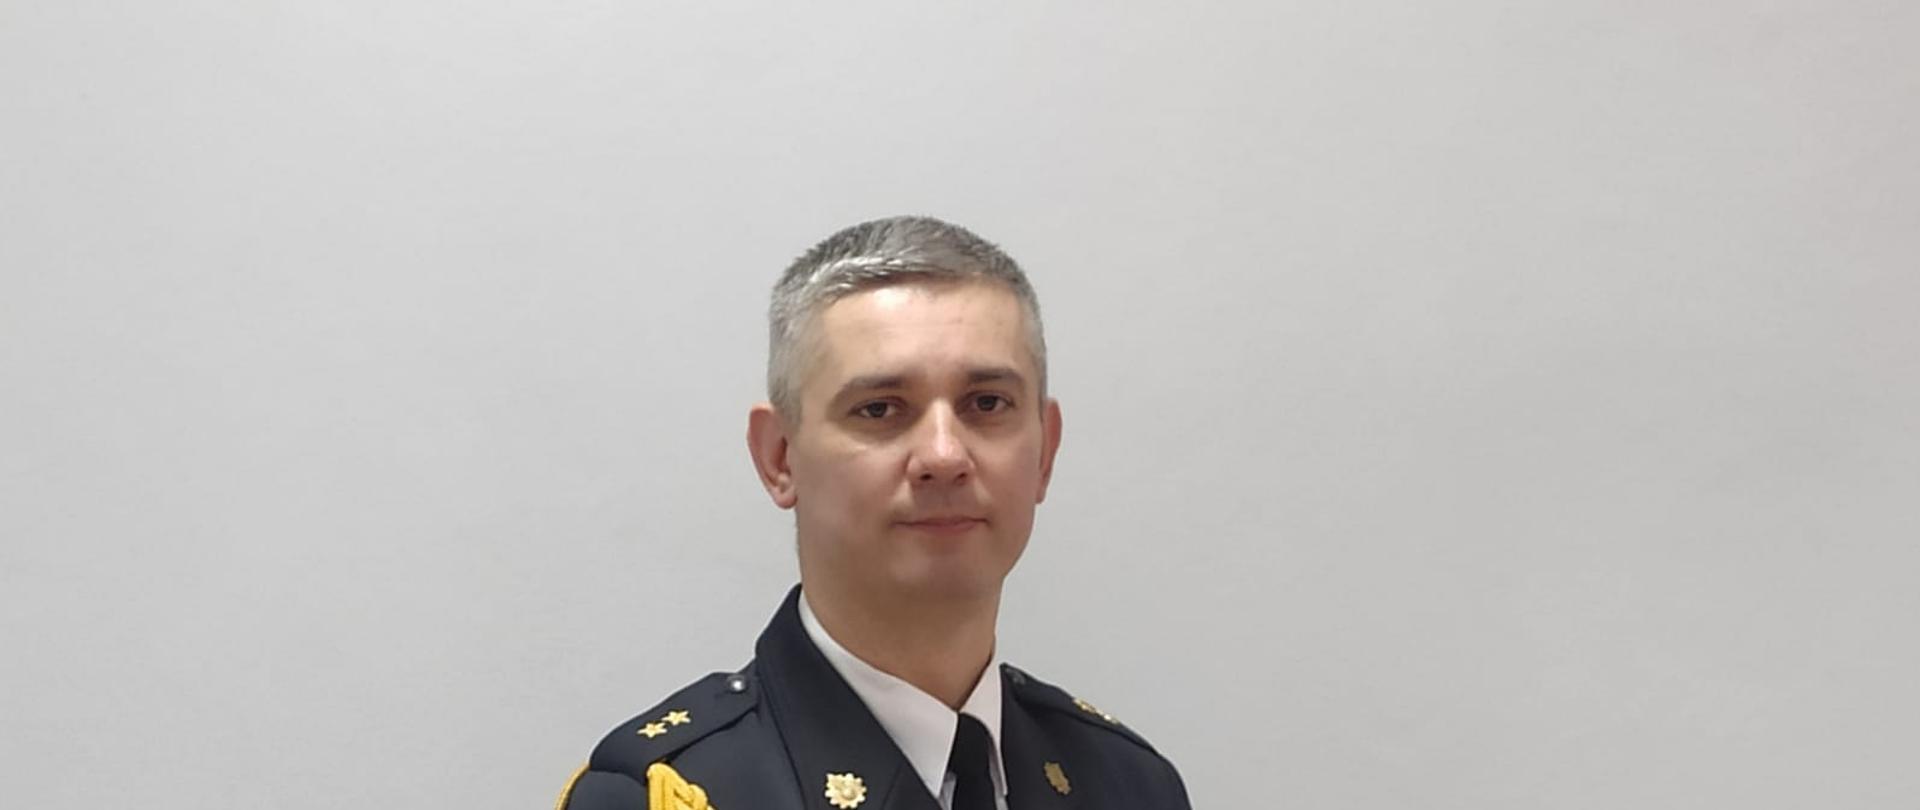 Zdjęcie przedstawia wizerunek Rzecznika Prasowego KP PSP w Łobzie ubranego w mundur wyjściowy